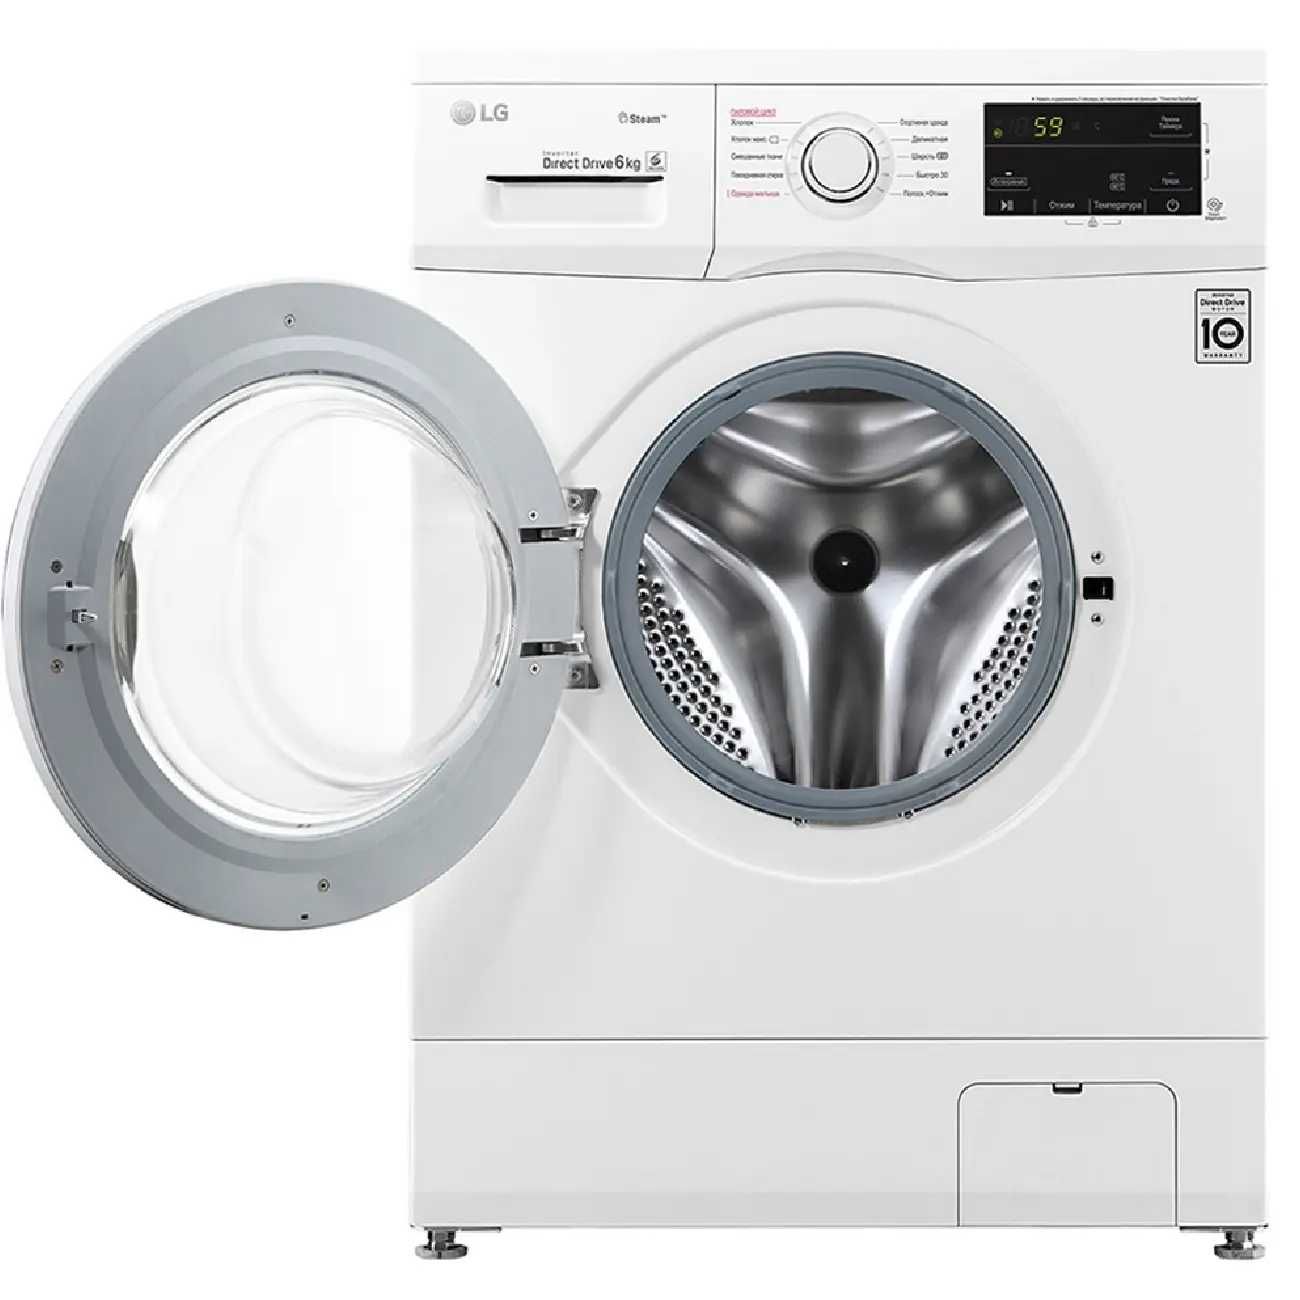 Узкая стиральная машина LG F2J3NS0W, функция пара Steam, 6кг